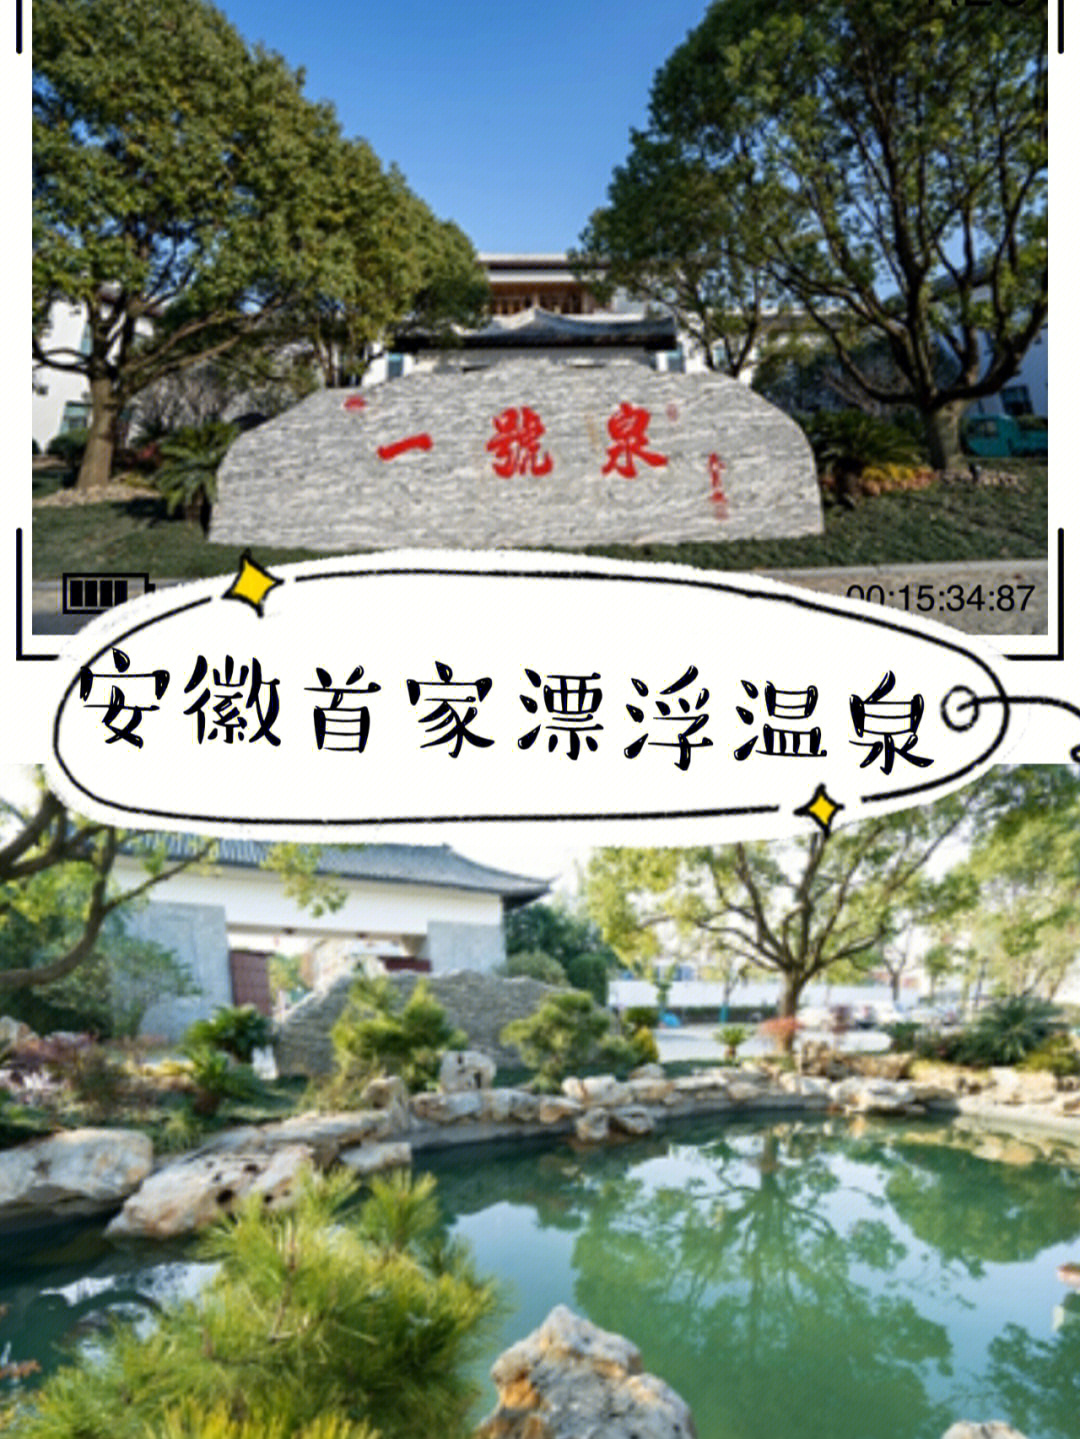 969696庐江一號泉漂浮温泉酒店位于庐江县汤池镇,2020年重新